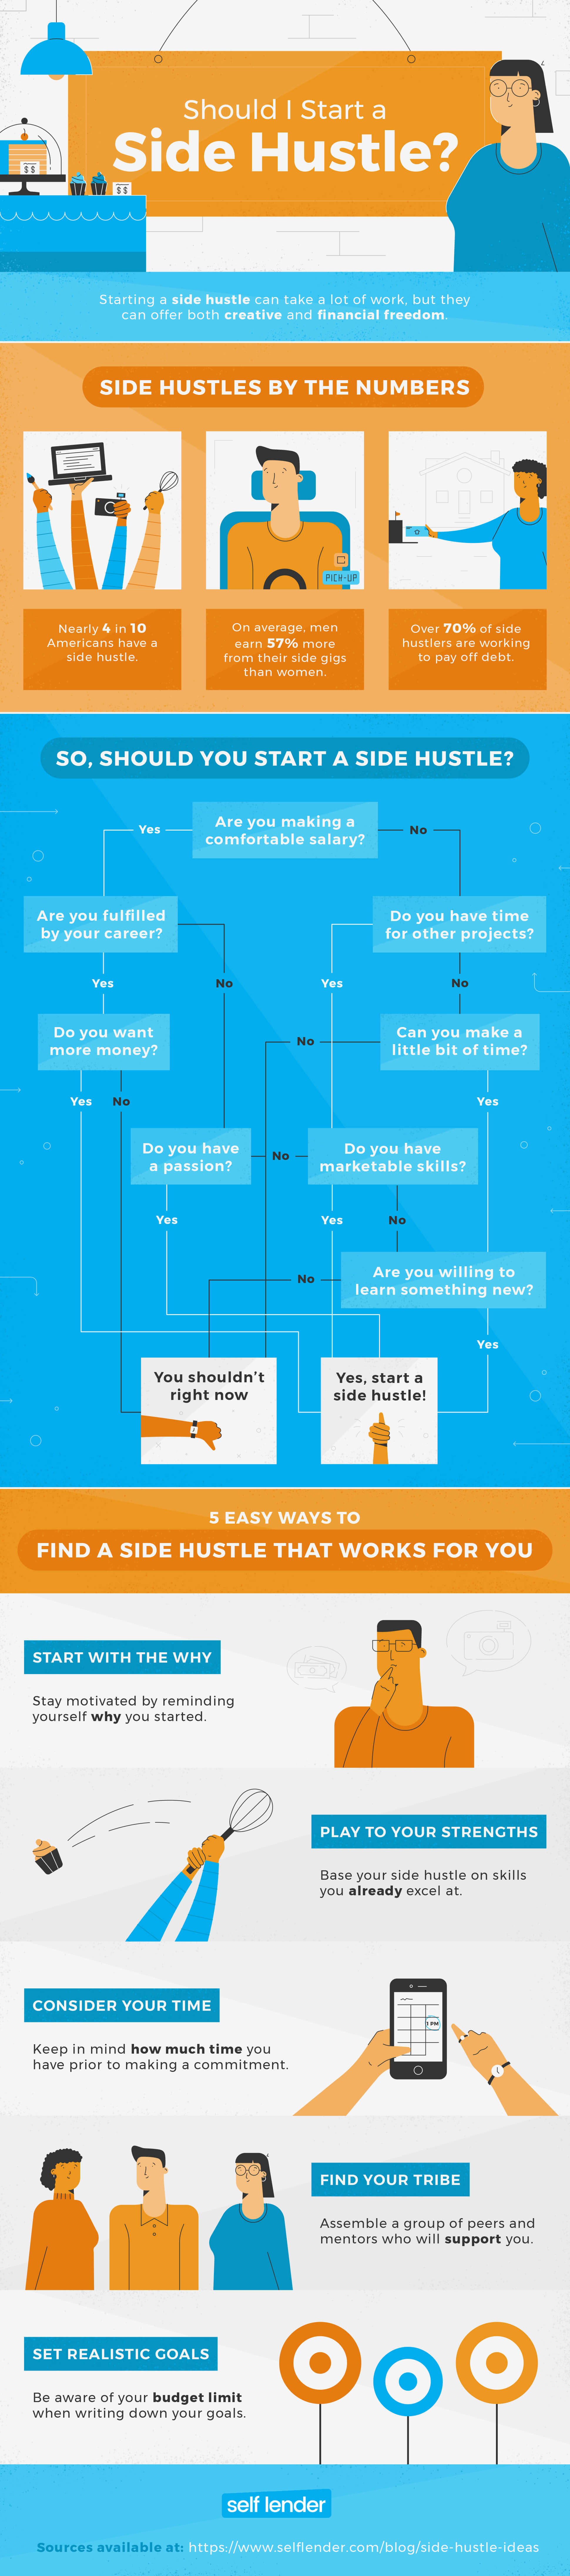 51 Side Hustle Ideas For Recent Grads Self Lender - should i start a side hustle flow chart